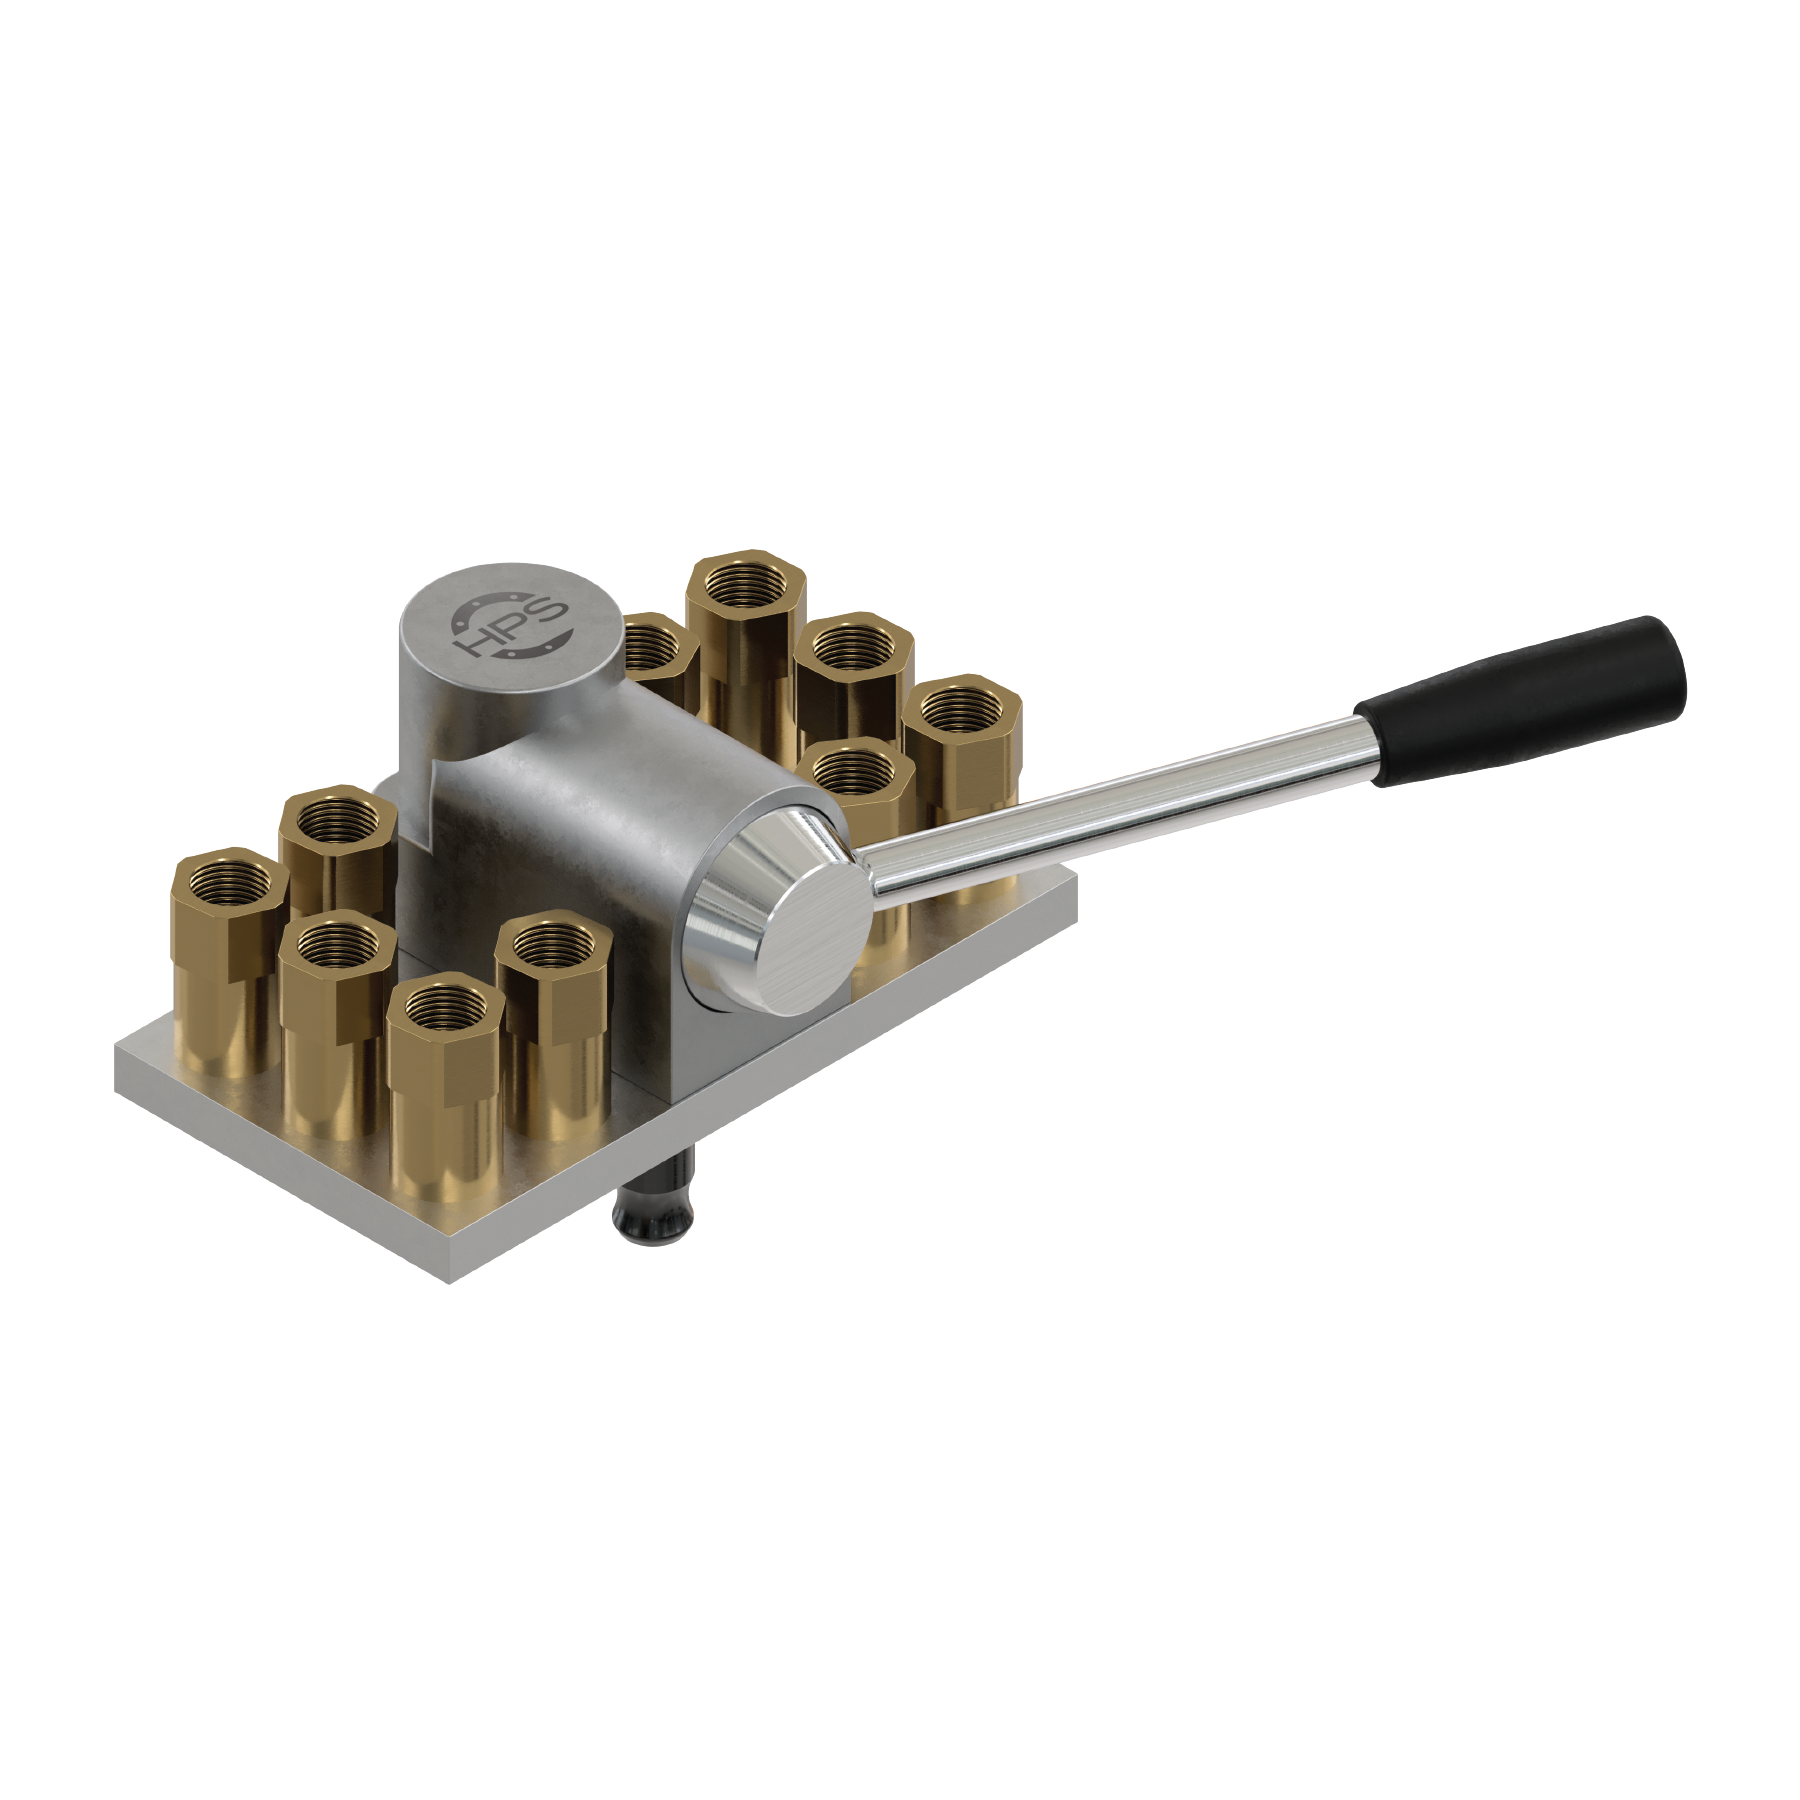 Water multi-couplings – 22 series (10 sockets)